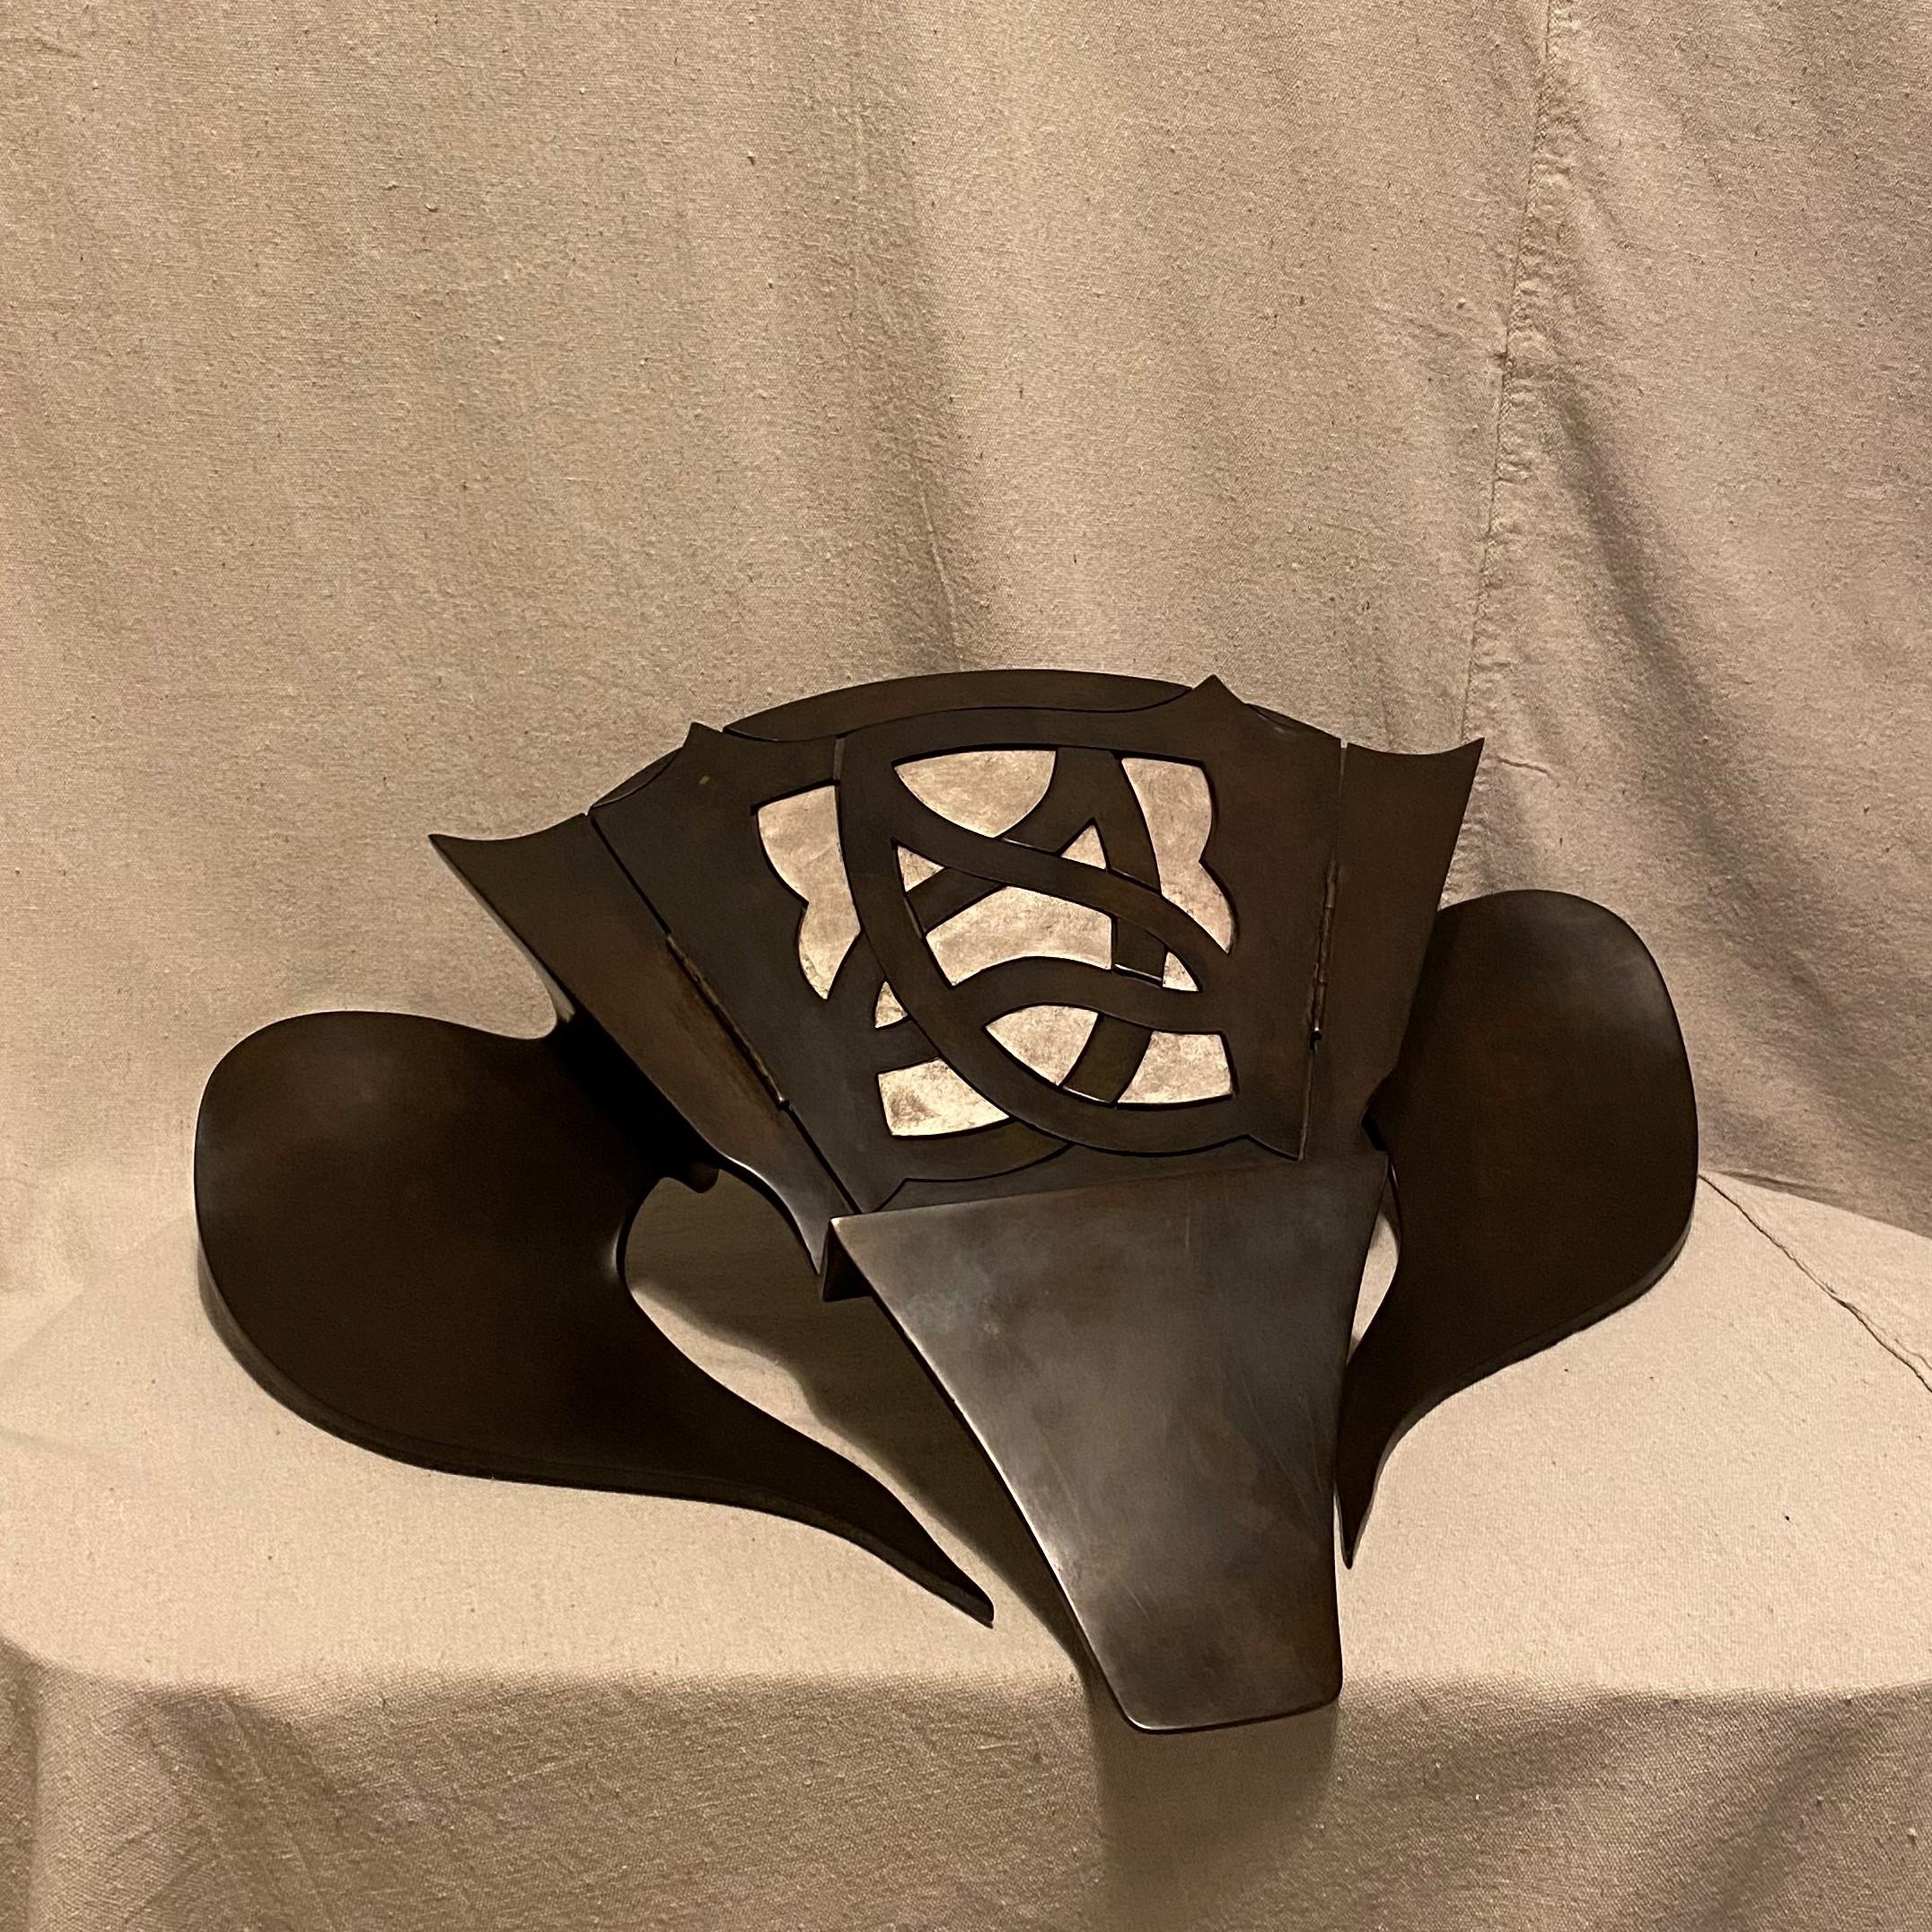 Inspiriert vom schlauen Fuchs und der faszinierenden Fledermaus, ist die aus Bronze gegossene Rednerpult-Skulptur einer von drei Entwürfen der Designerin/Künstlerin Dana Nicholson. Skulptural steht er für sich allein, aber er ist auch ein eleganter